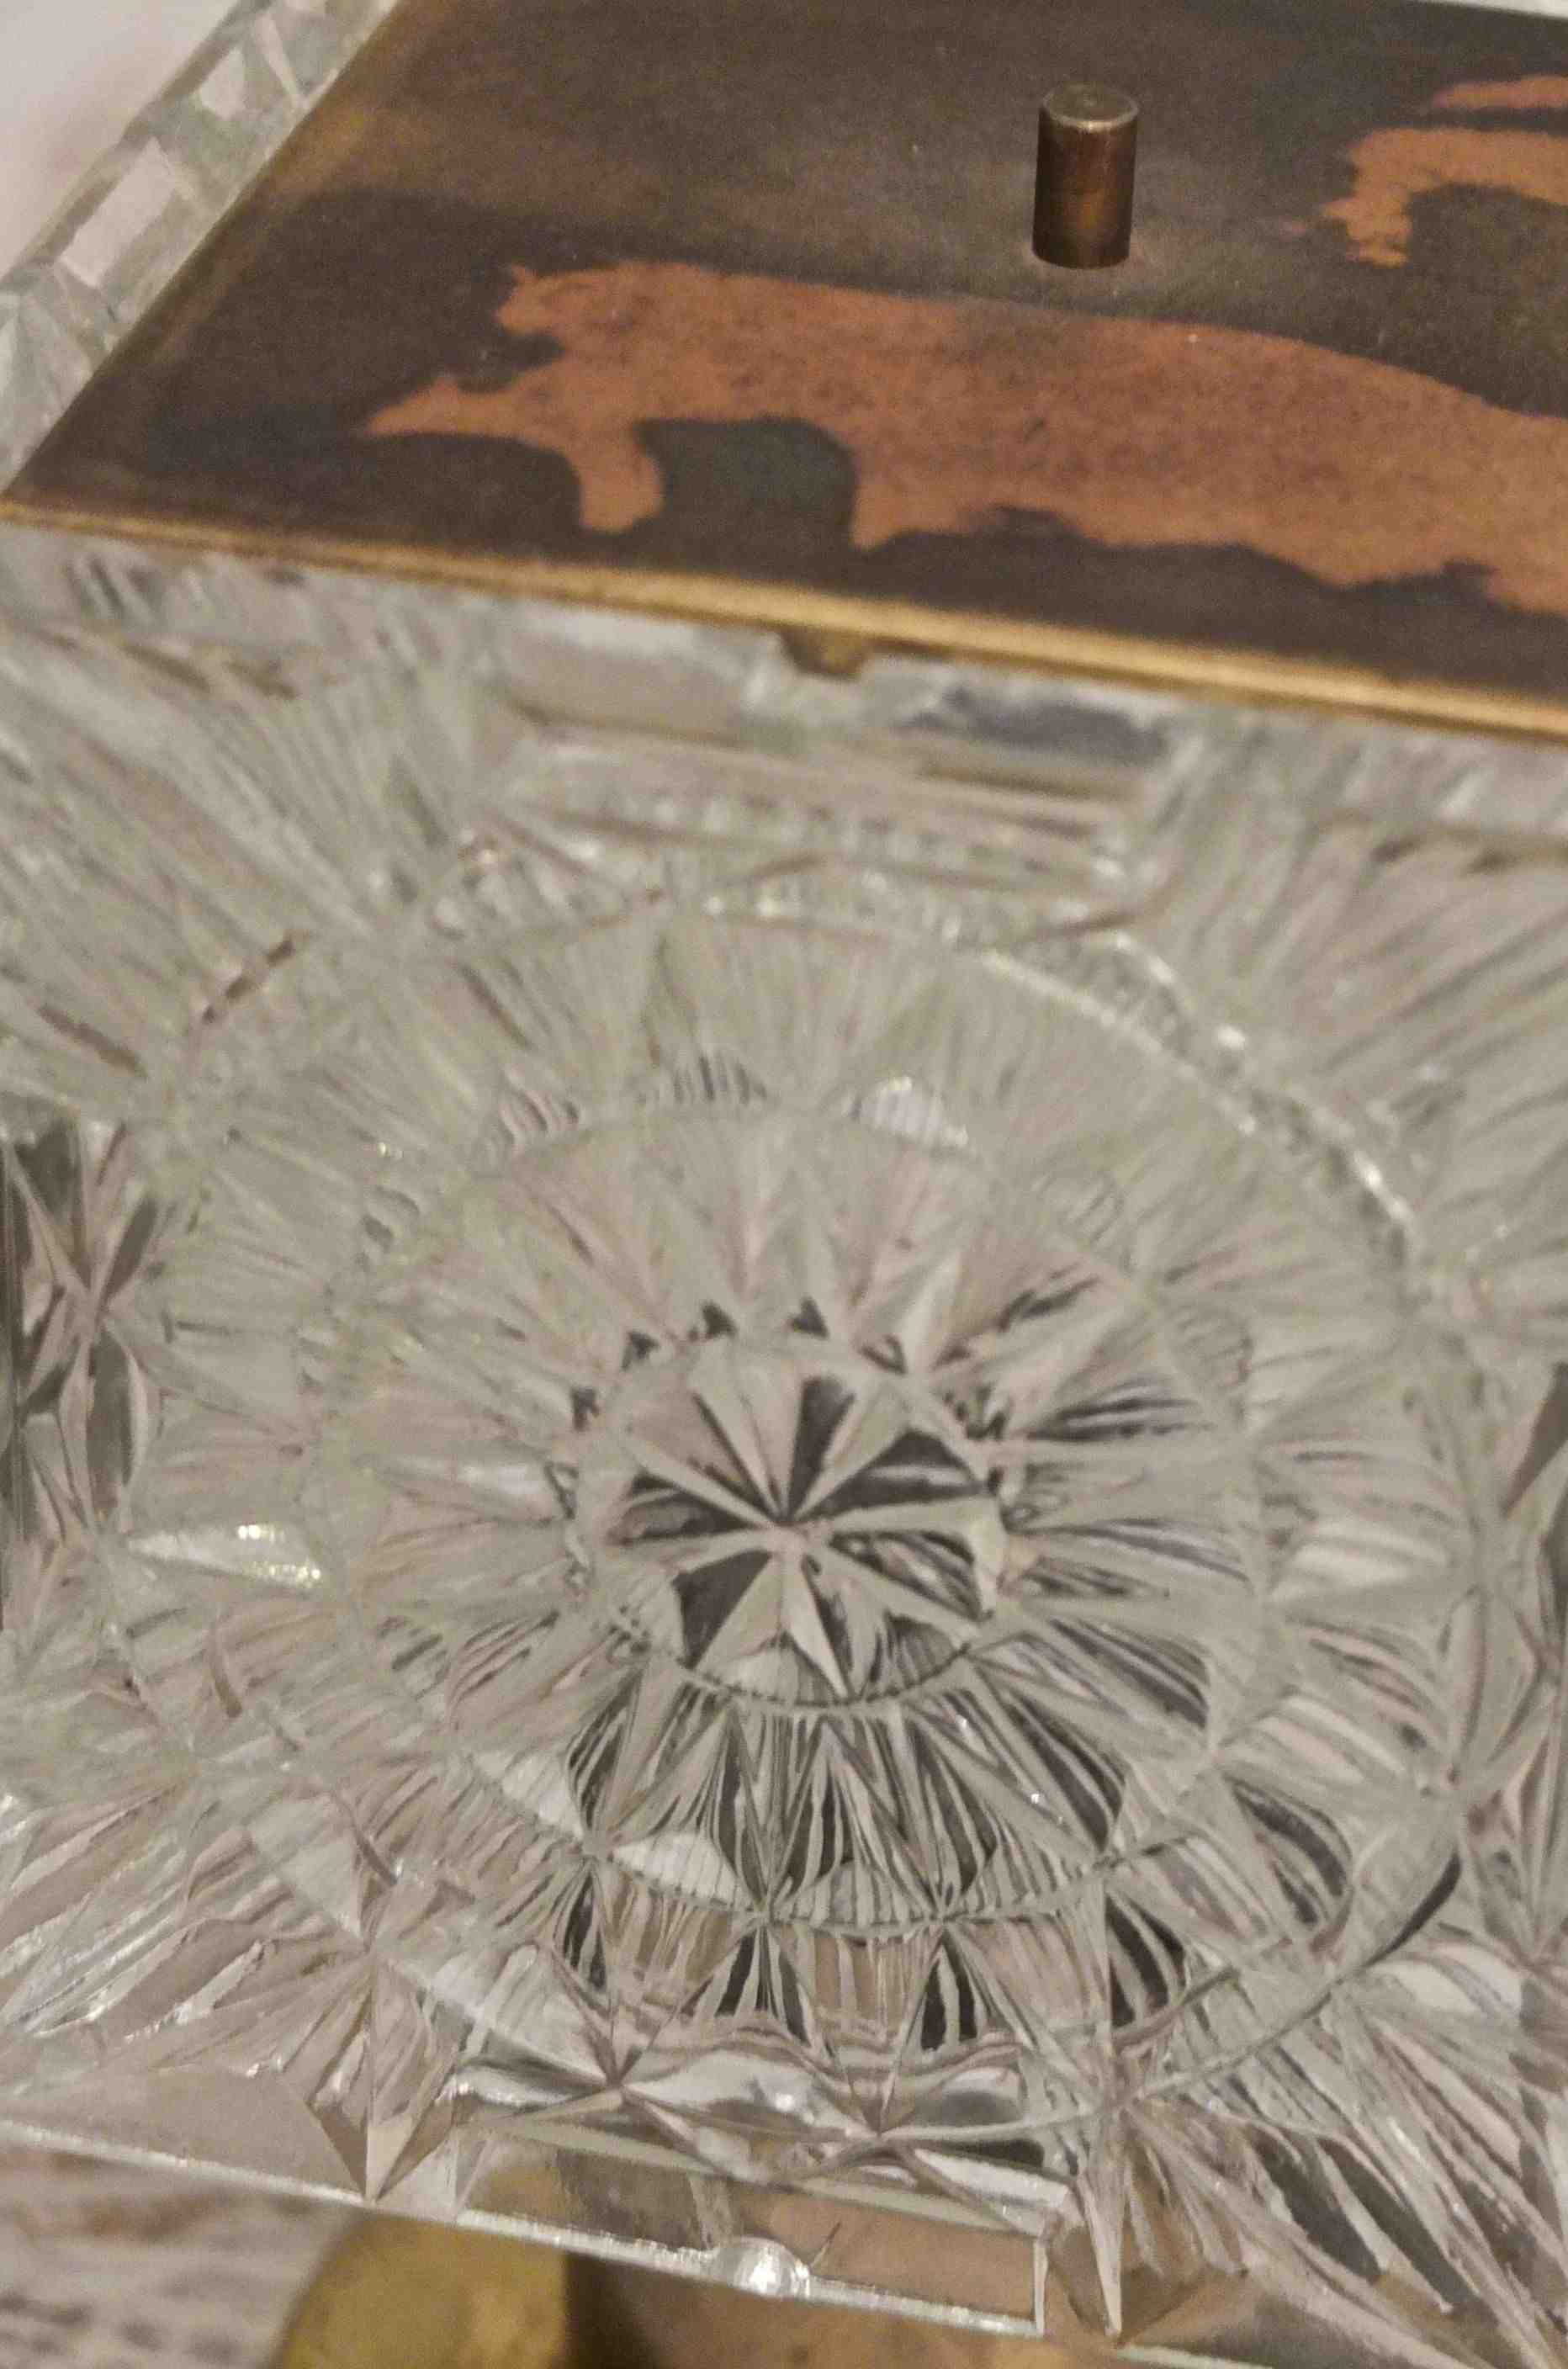 Slavia Vintage lampe des années 80 en verre modèle "Glasnost" détail travail du verre